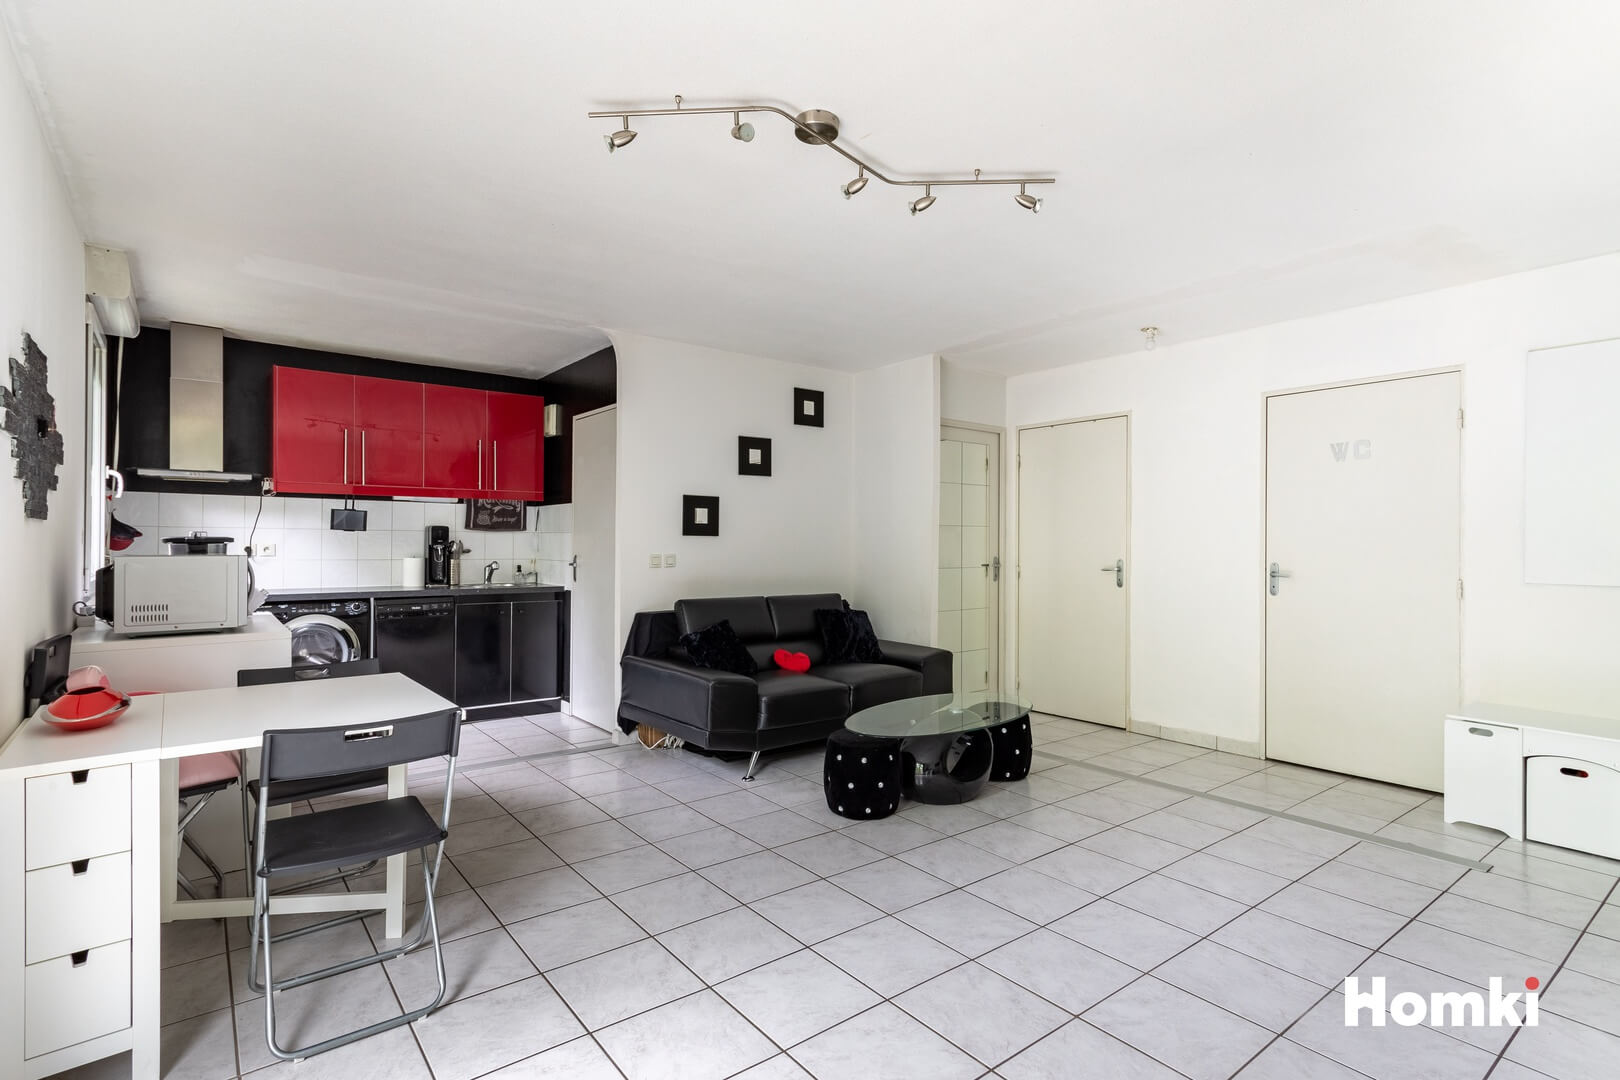 Homki - Vente Appartement  de 50.0 m² à Vénissieux 69200